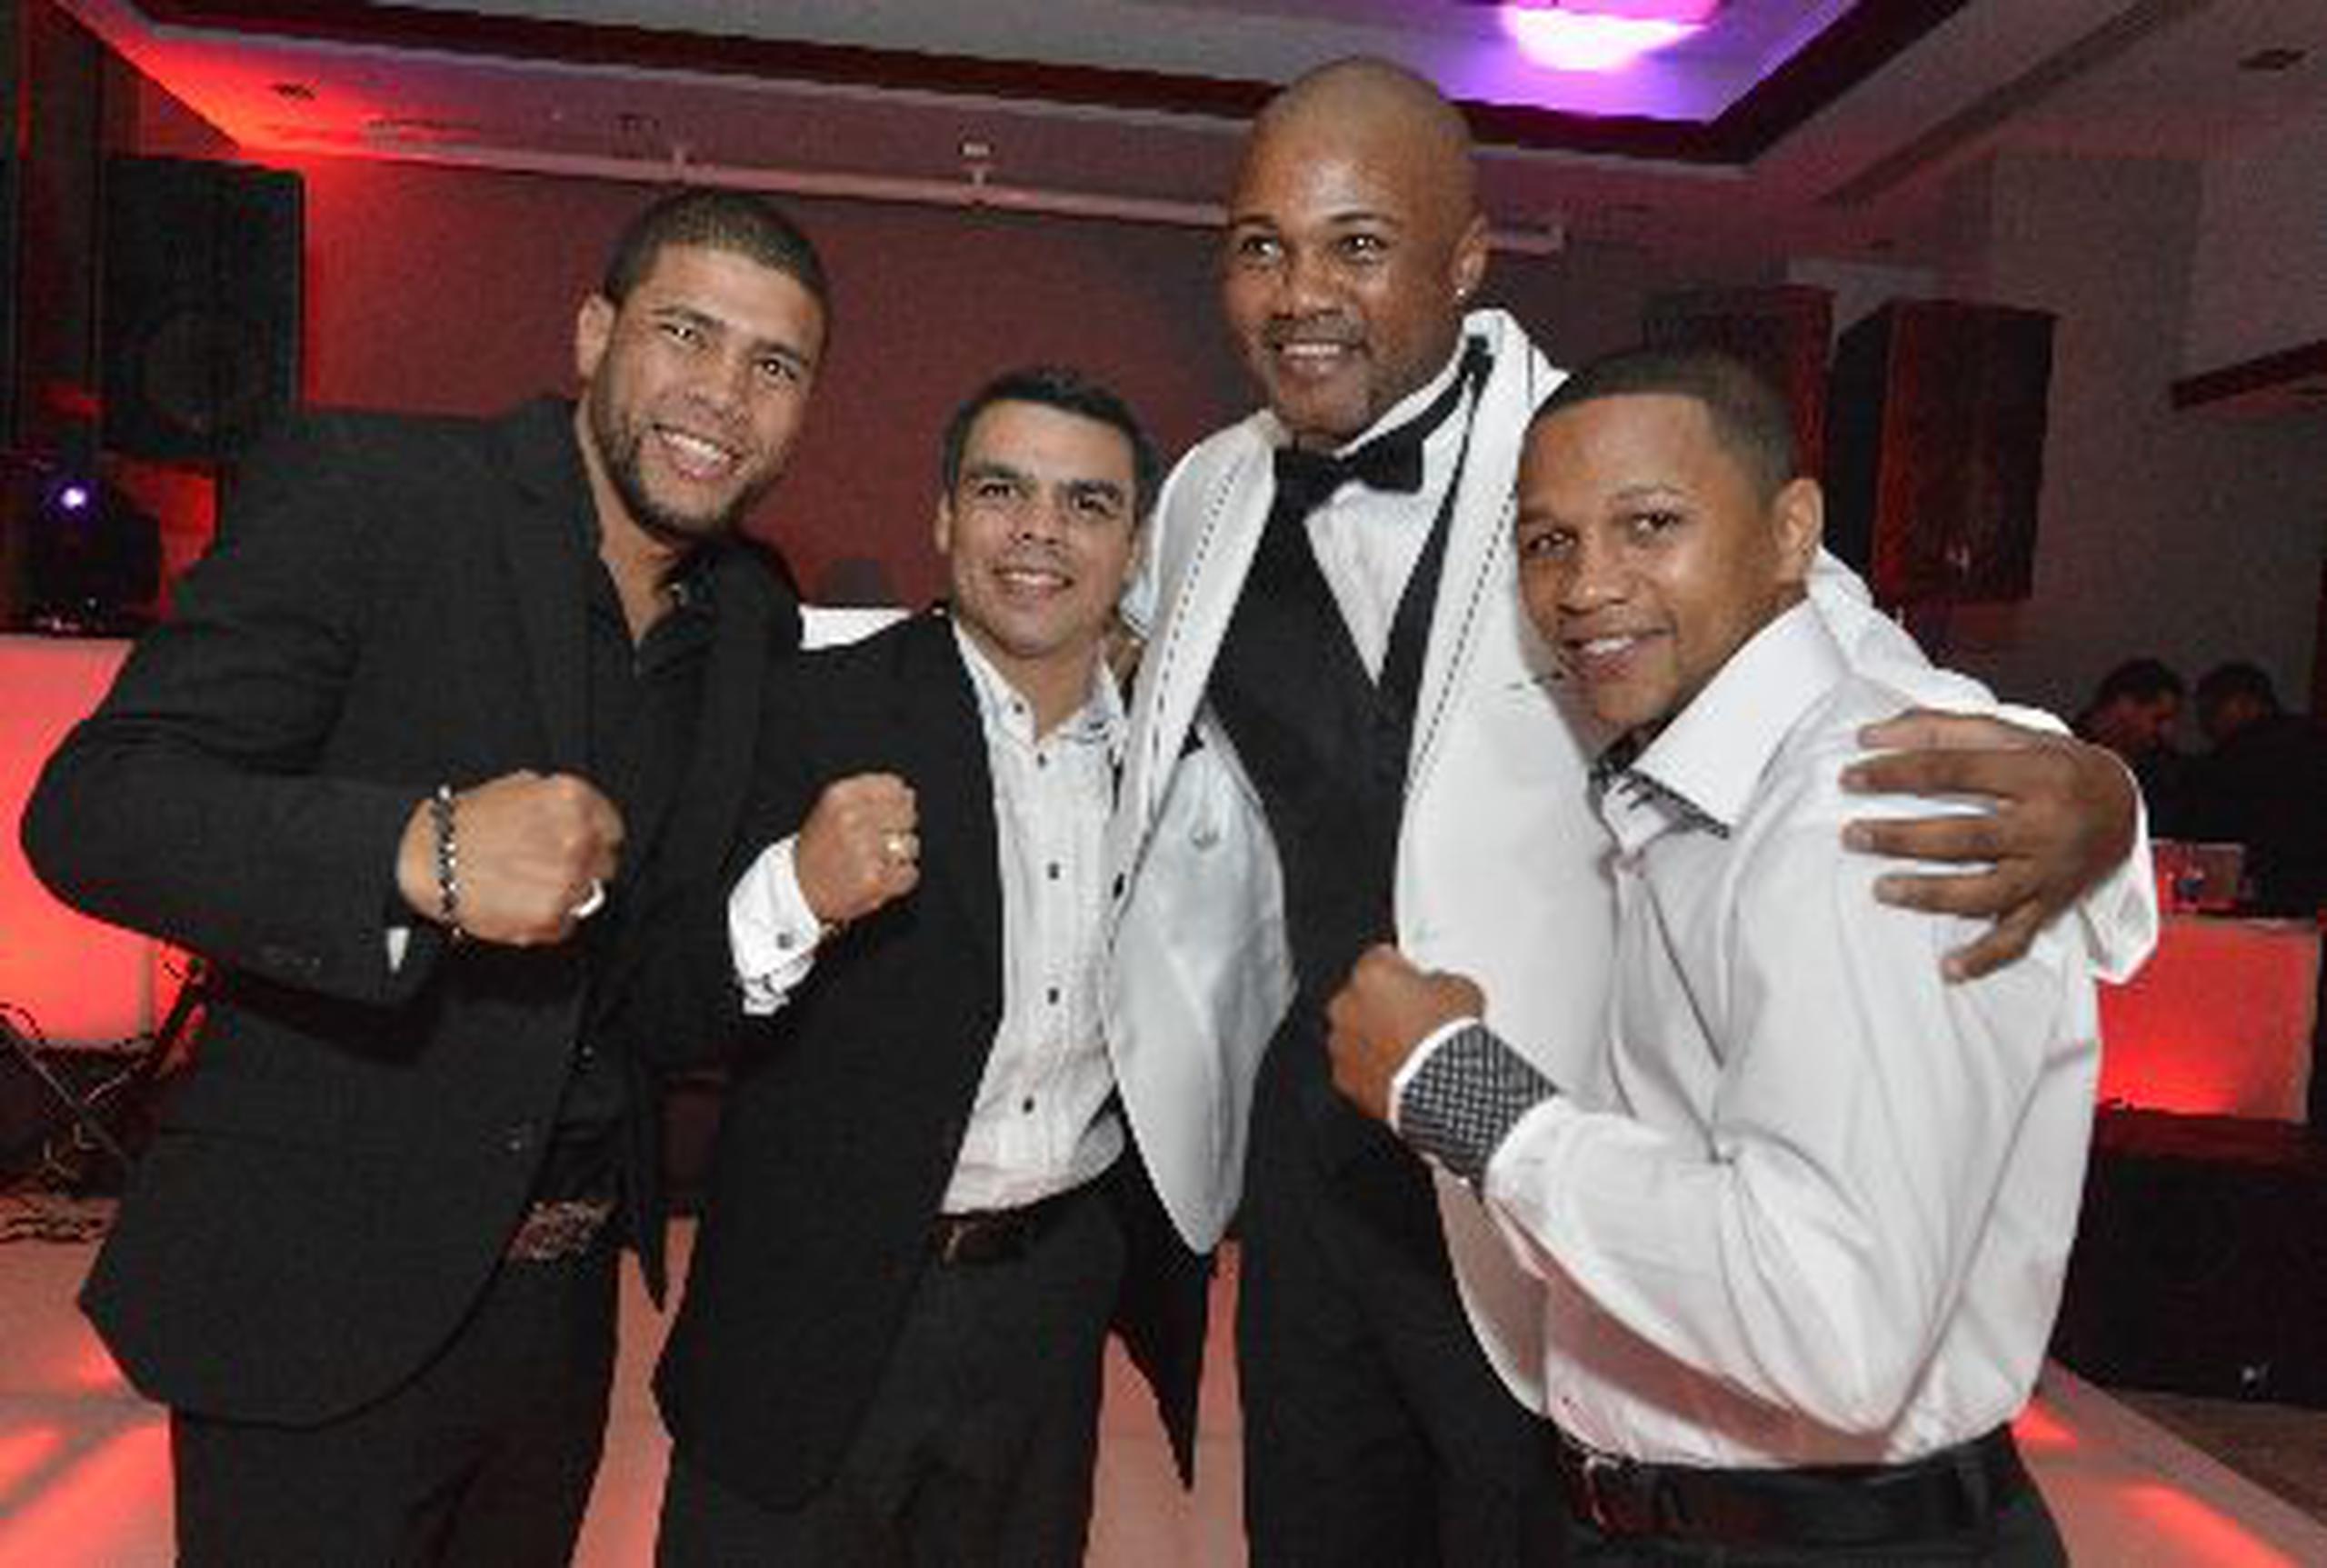  Los boxeadores Juan Manuel “Juanma” López, Alex  Sánchez e Iván Calderón dijeron presente en la actividad que se llevó a cabo en un hotel de San Juan.     